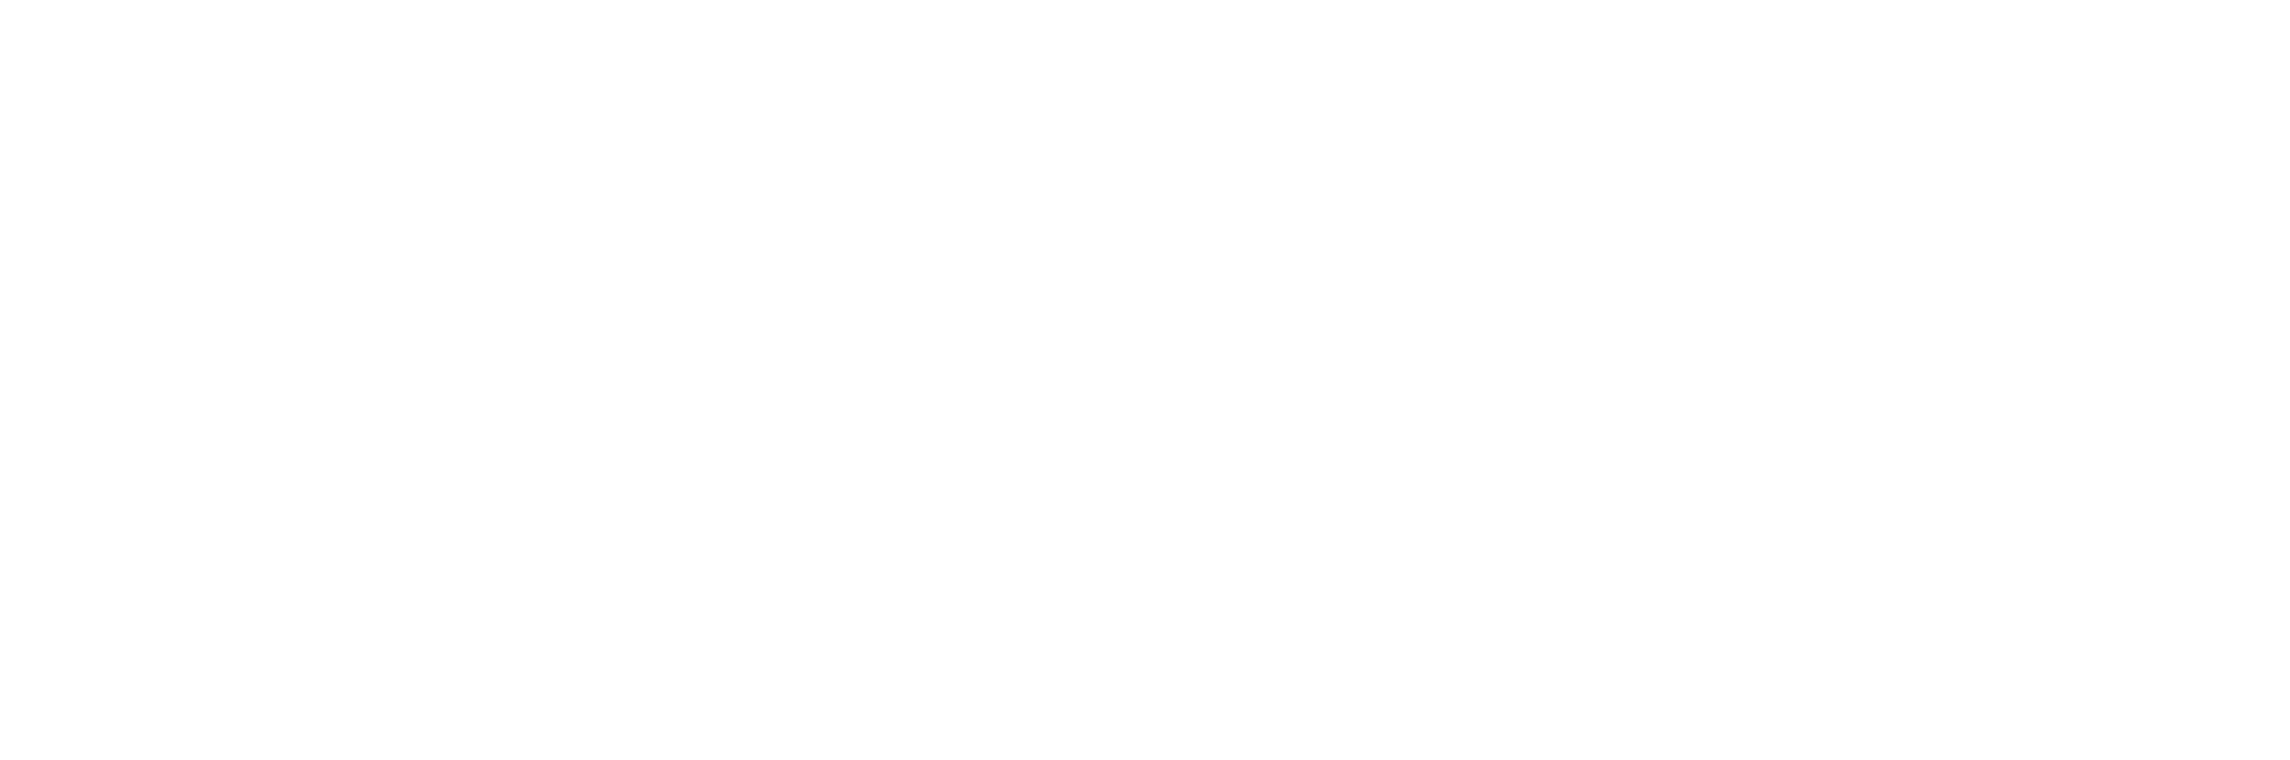 Adaptive Chiropractic